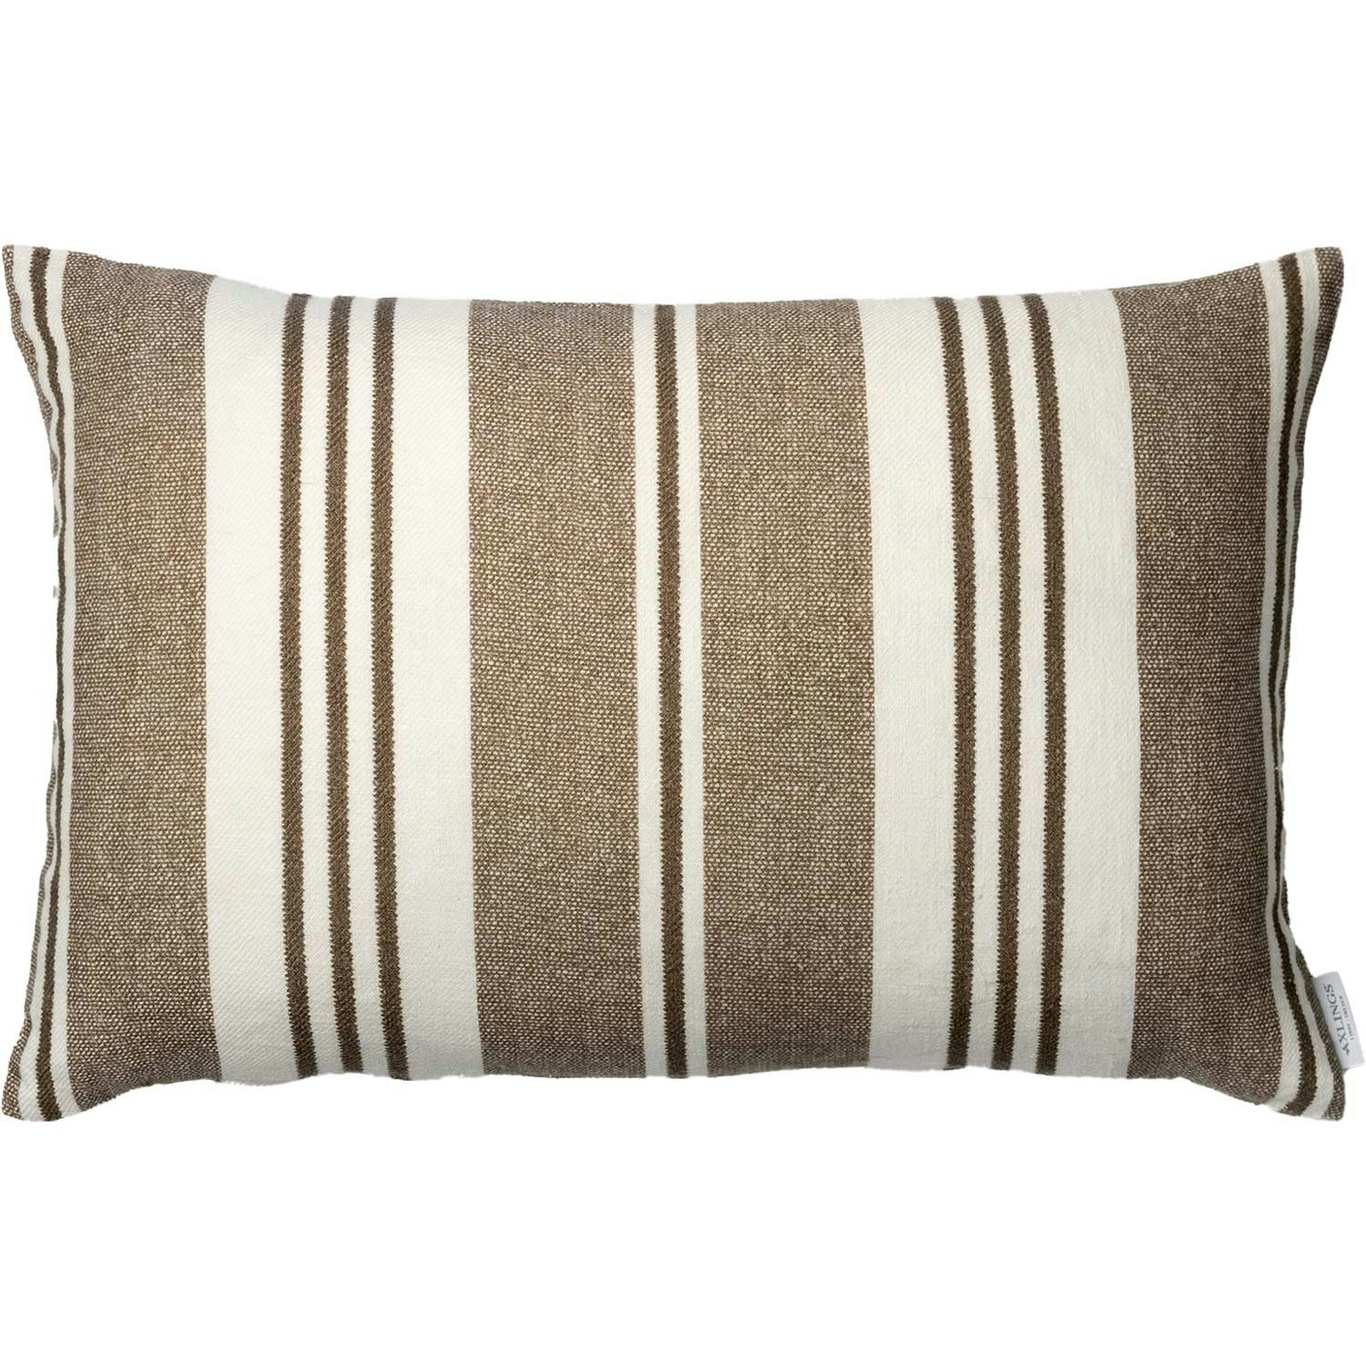 Vändteg Cushion Cover 40x60 cm, Brown/Off-white